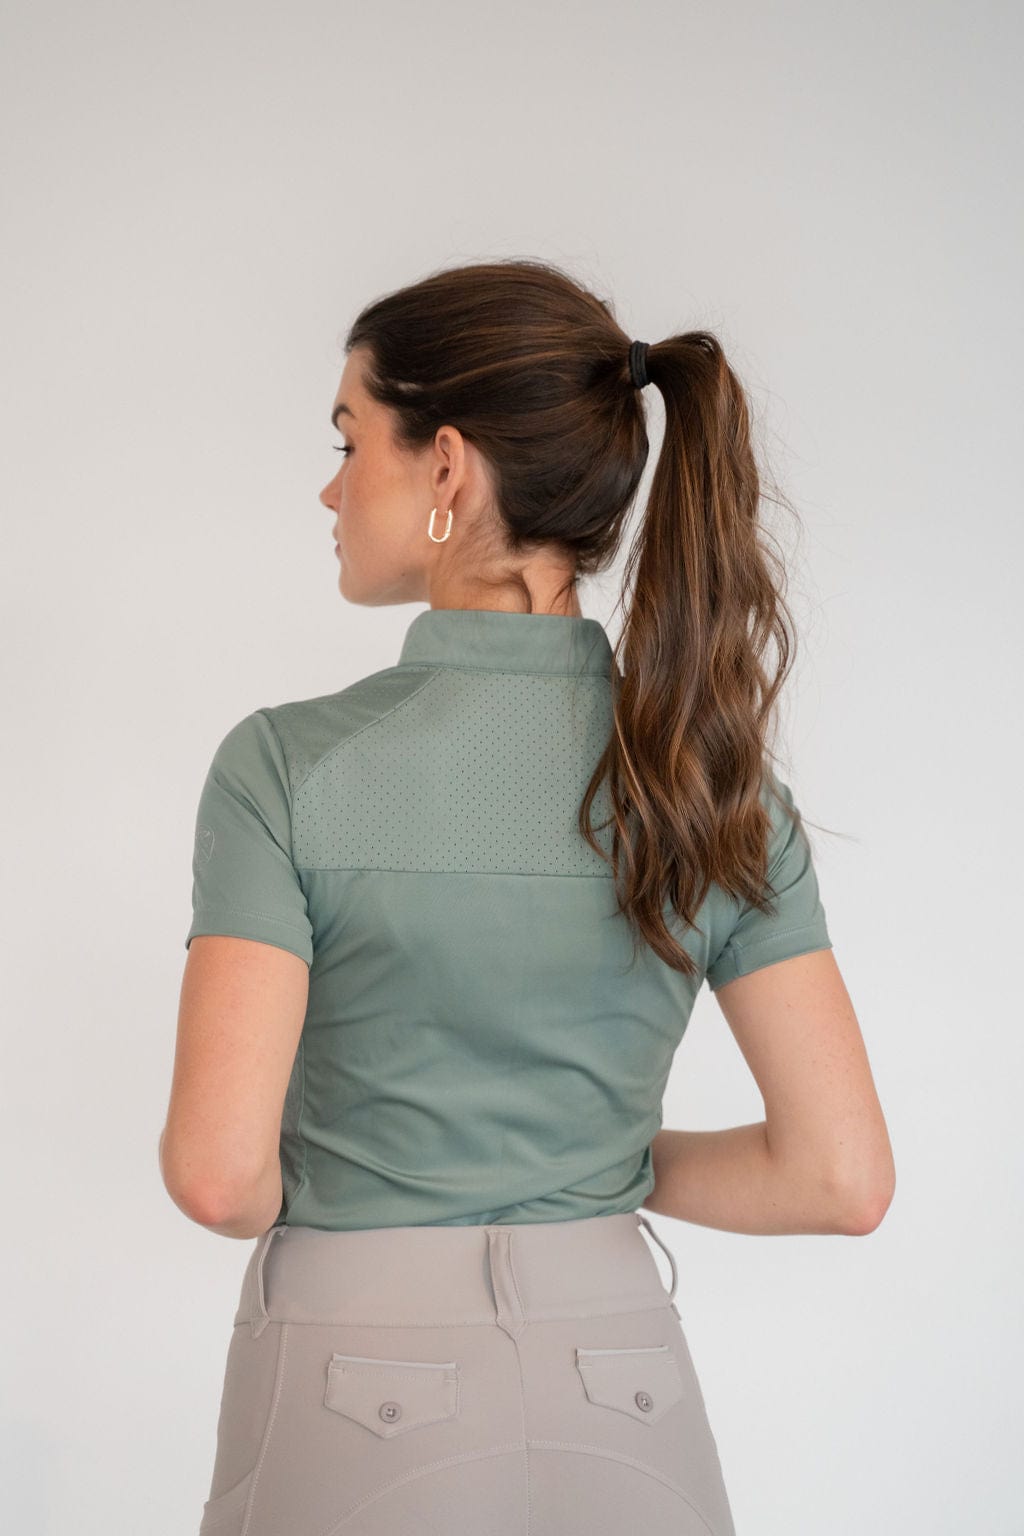 Sara Sun Shirt in Sage | Short or Long Sleeve